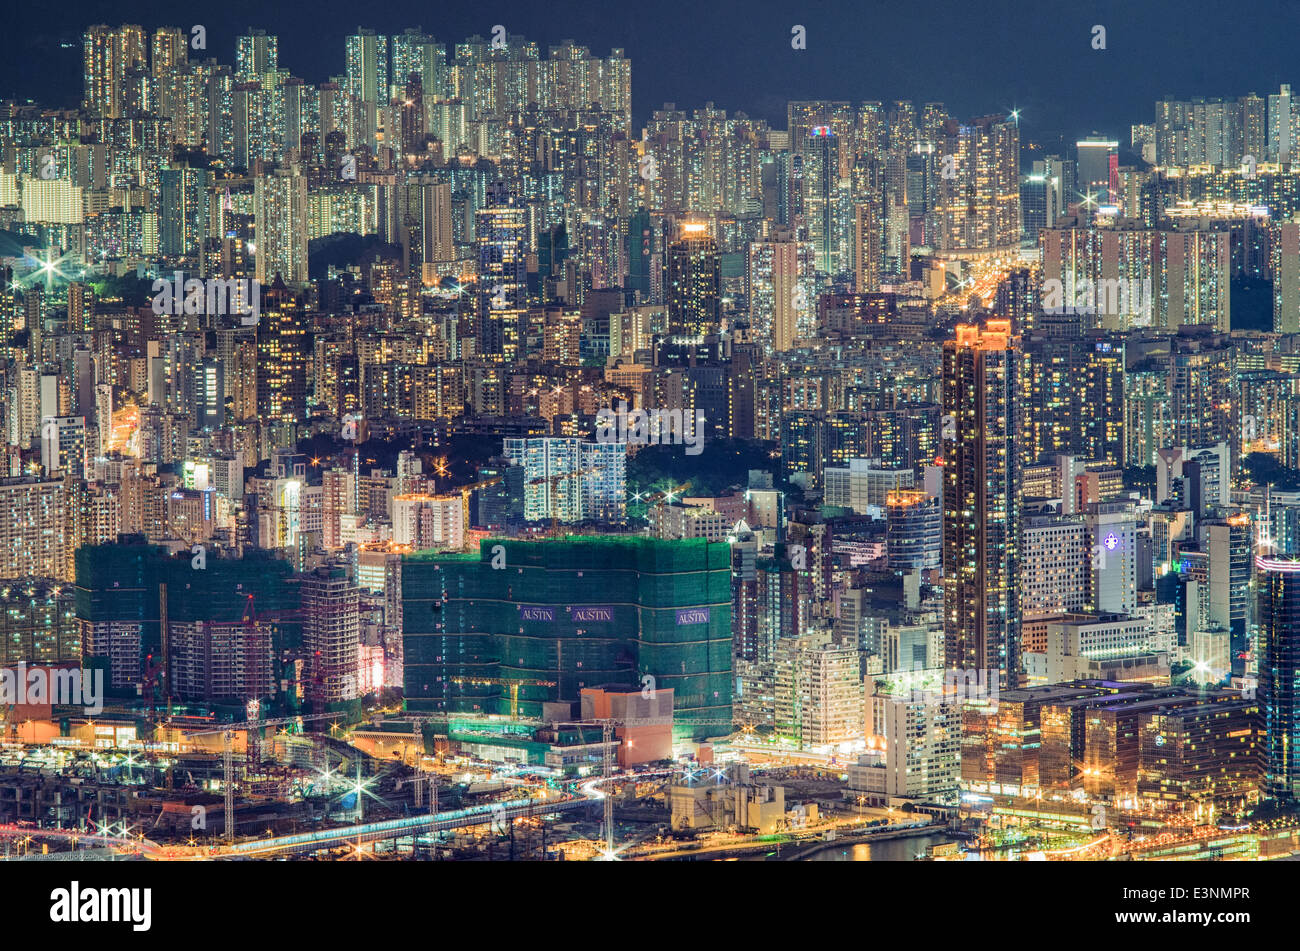 Hong Kong-Gehäusen in der Nacht, mit hoher Dichte der Bevölkerung. Stockfoto